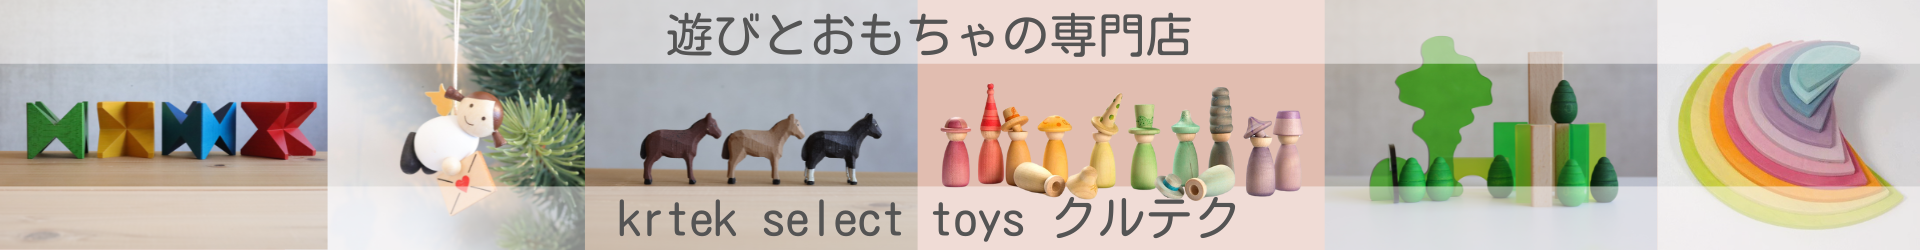 krtek select toys ヘッダー画像